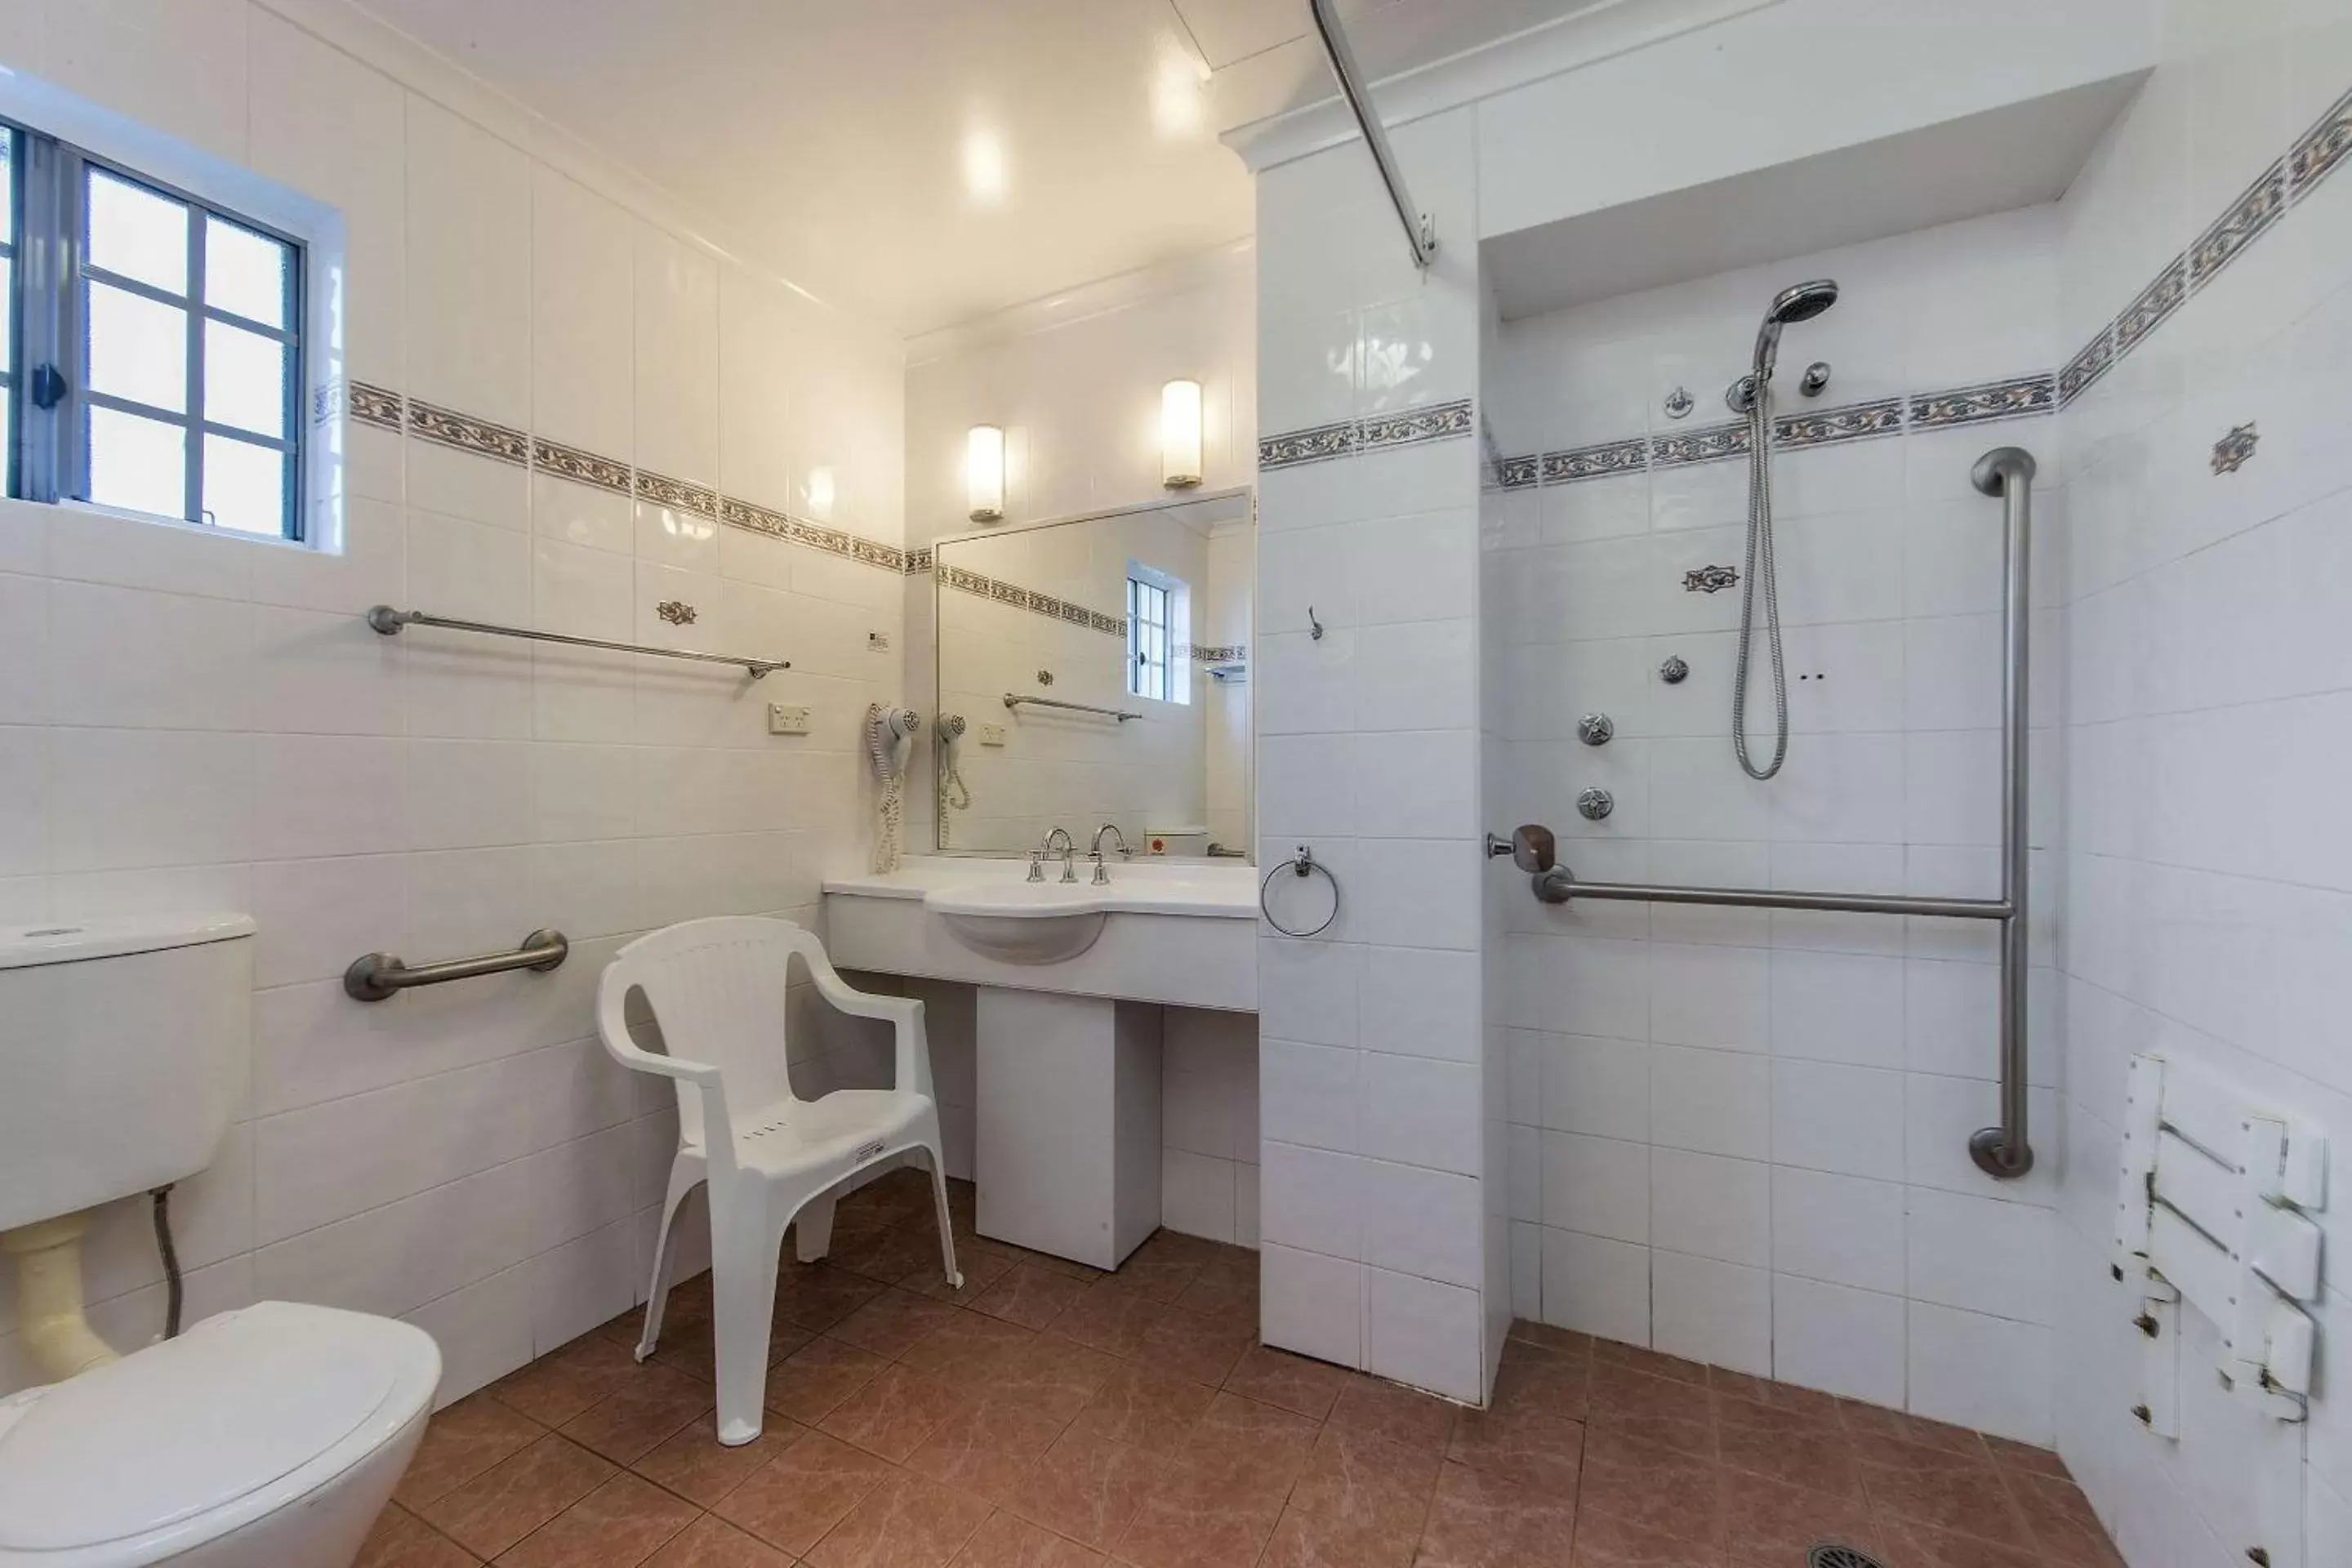 Bathroom in Quality Inn Penrith Sydney